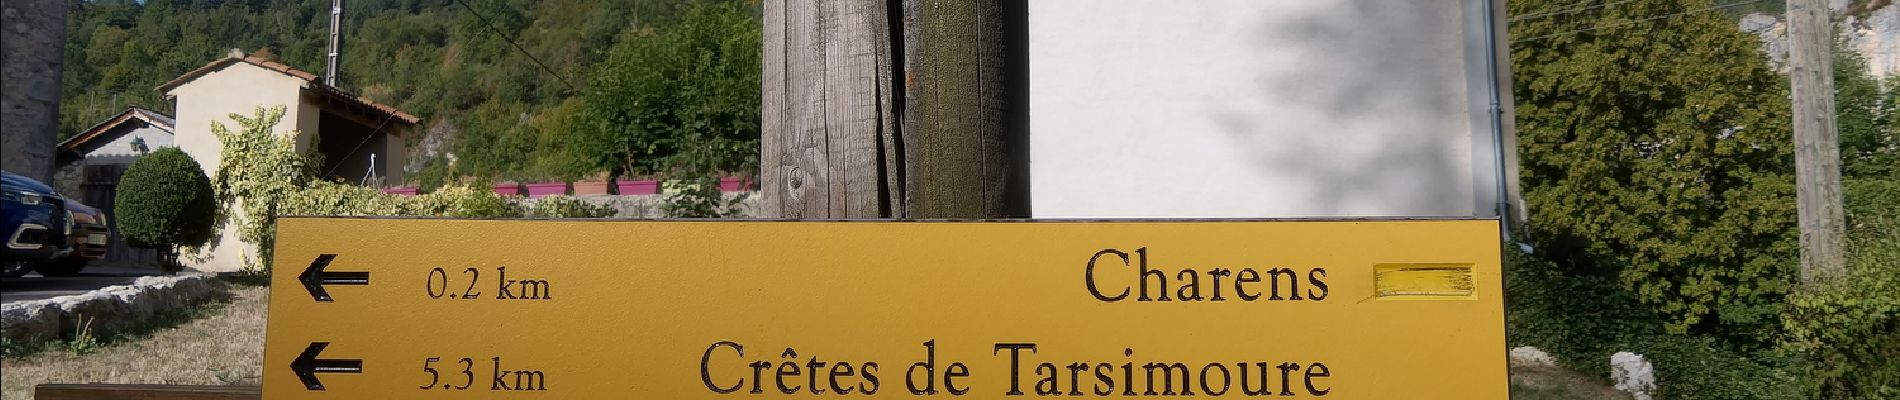 Randonnée Marche Charens - Montagne de Tarsimoure - Charens  - Photo